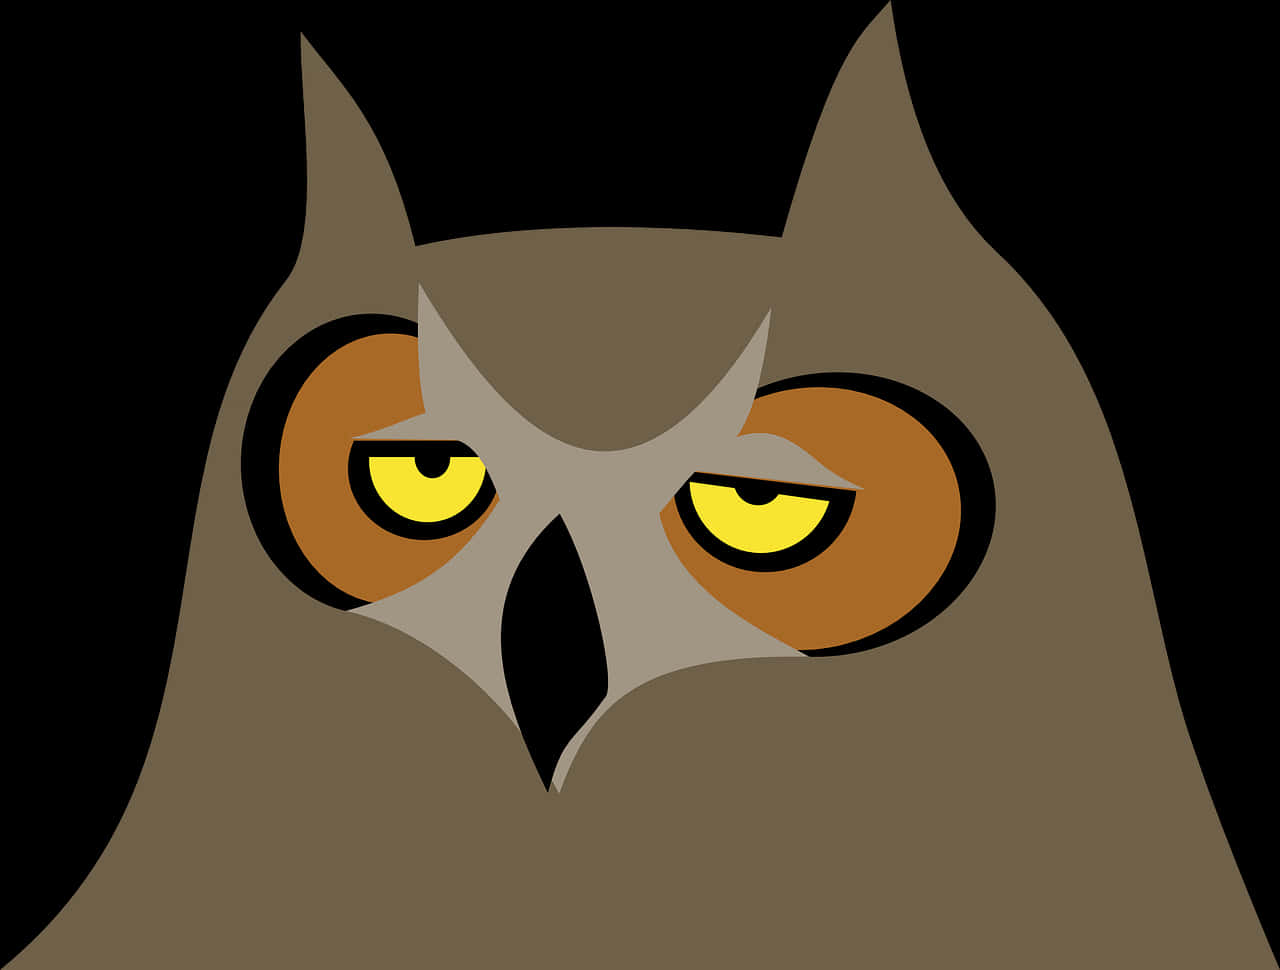 Stylized Owl Illustration PNG image